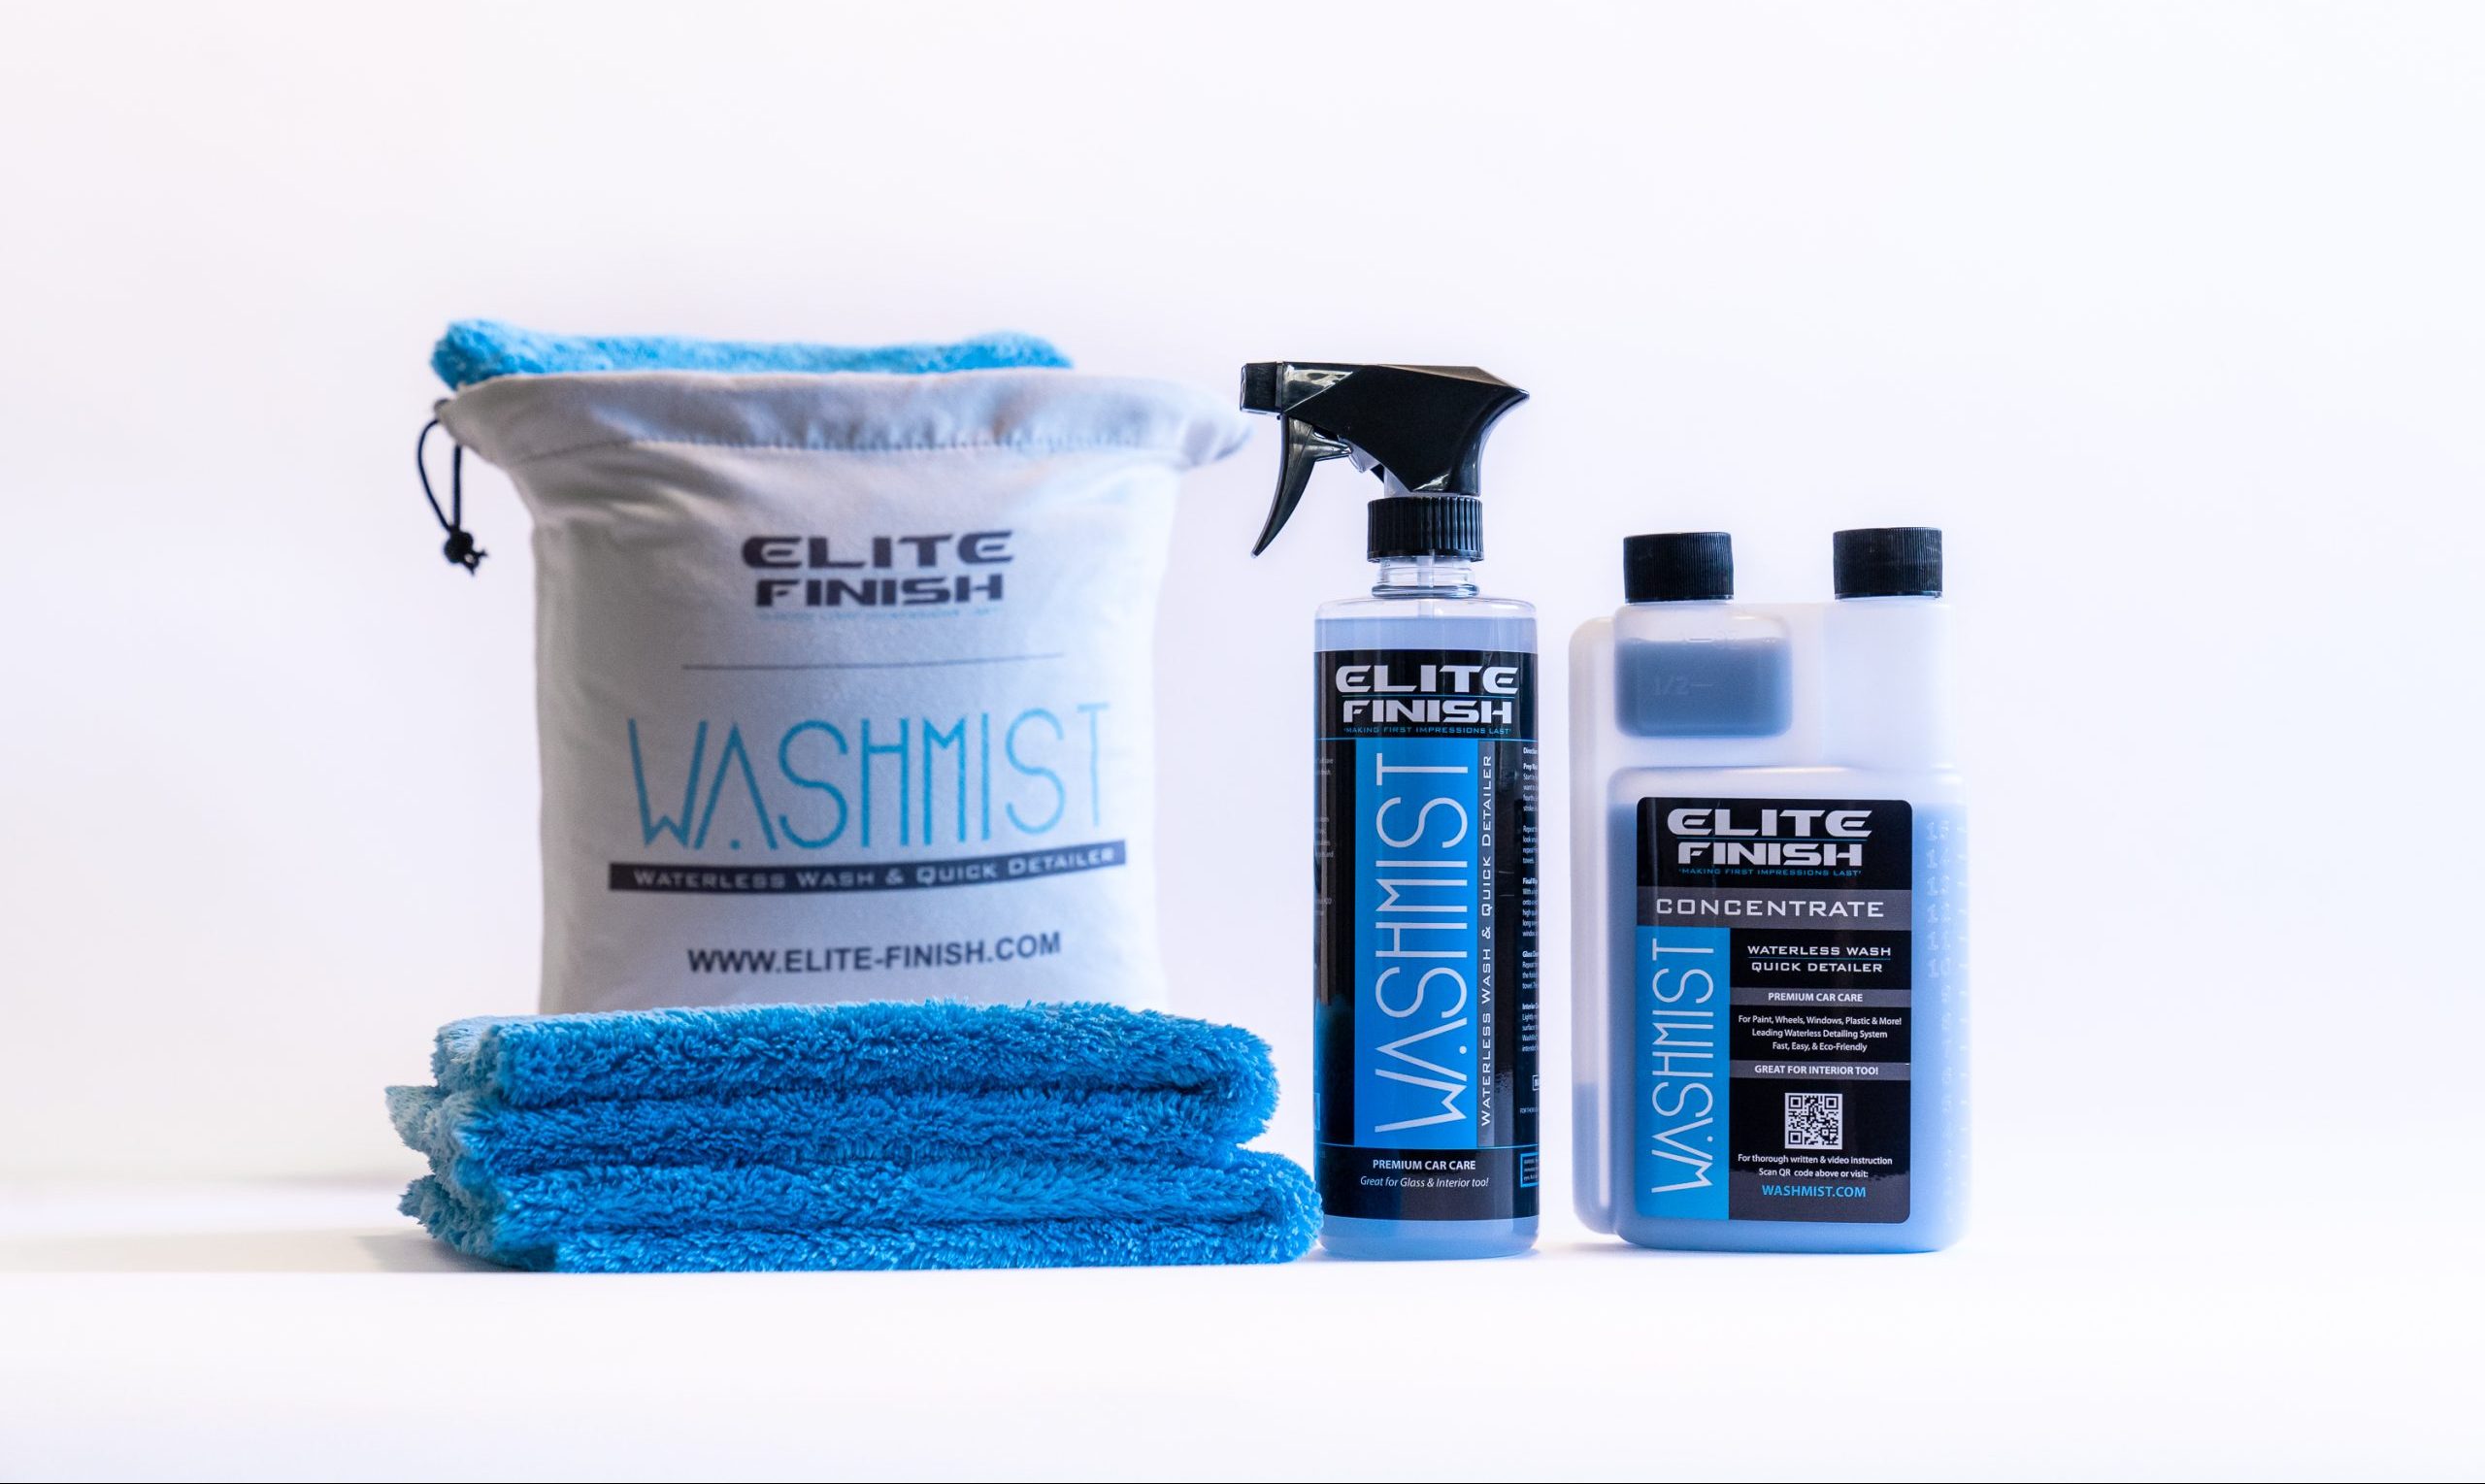 WashMist Waterless Wash Kit Product Image for Elite Finish Shop.